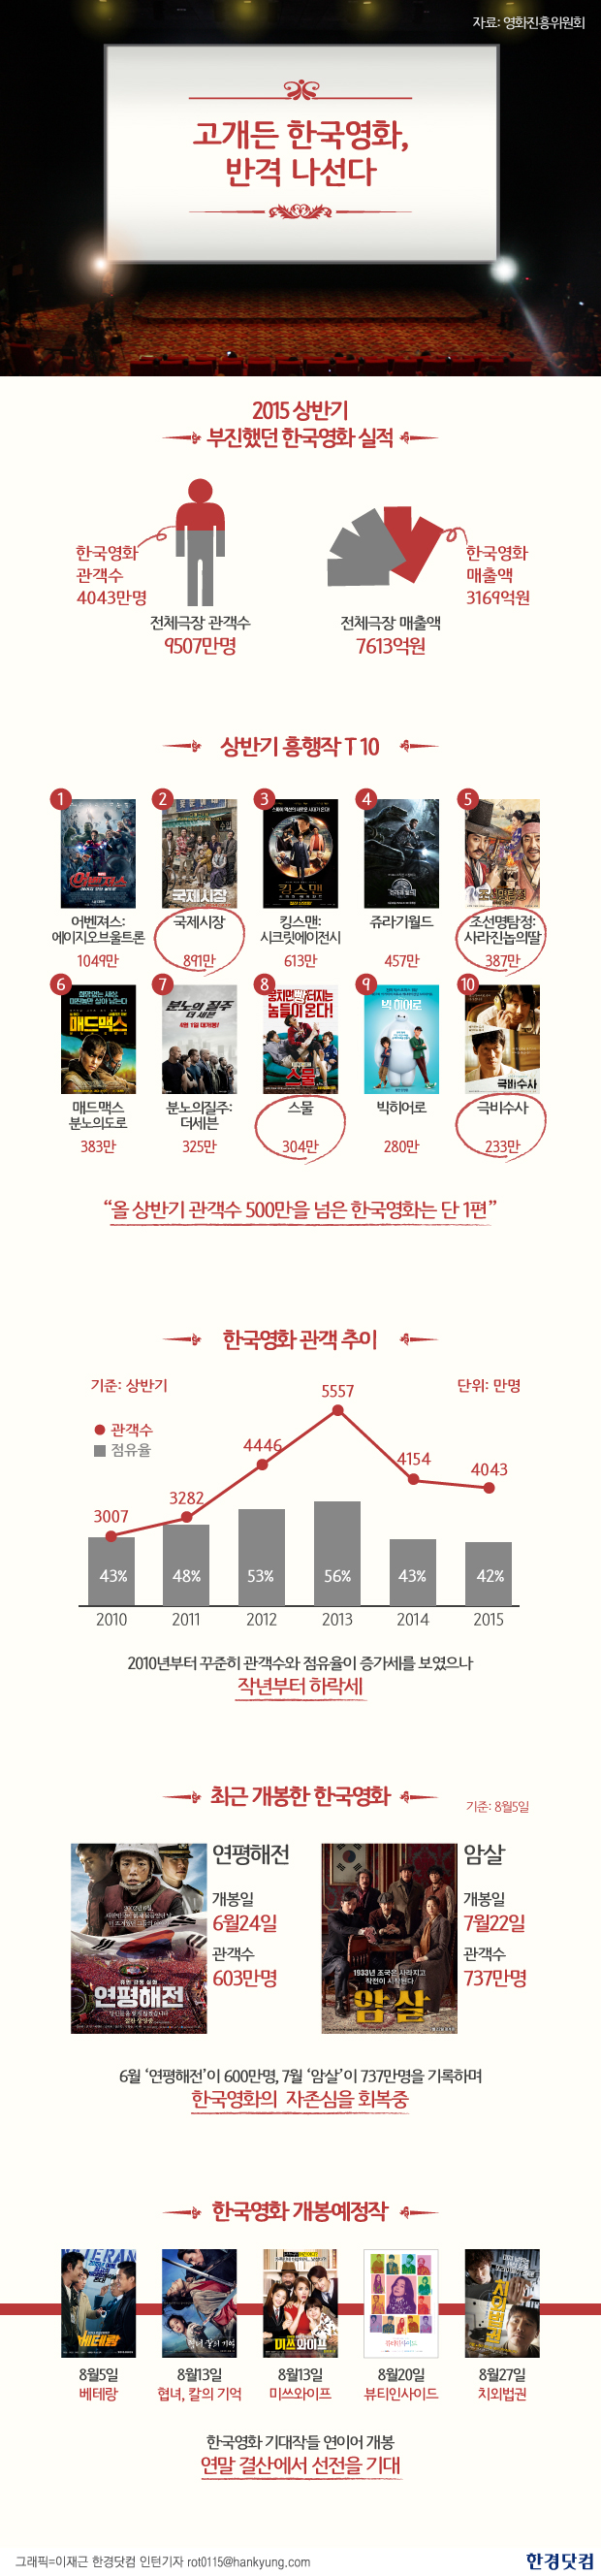 [인포그래픽] 고개든 한국영화, 반격 나선다 … 연평해전 암살, 승자는 